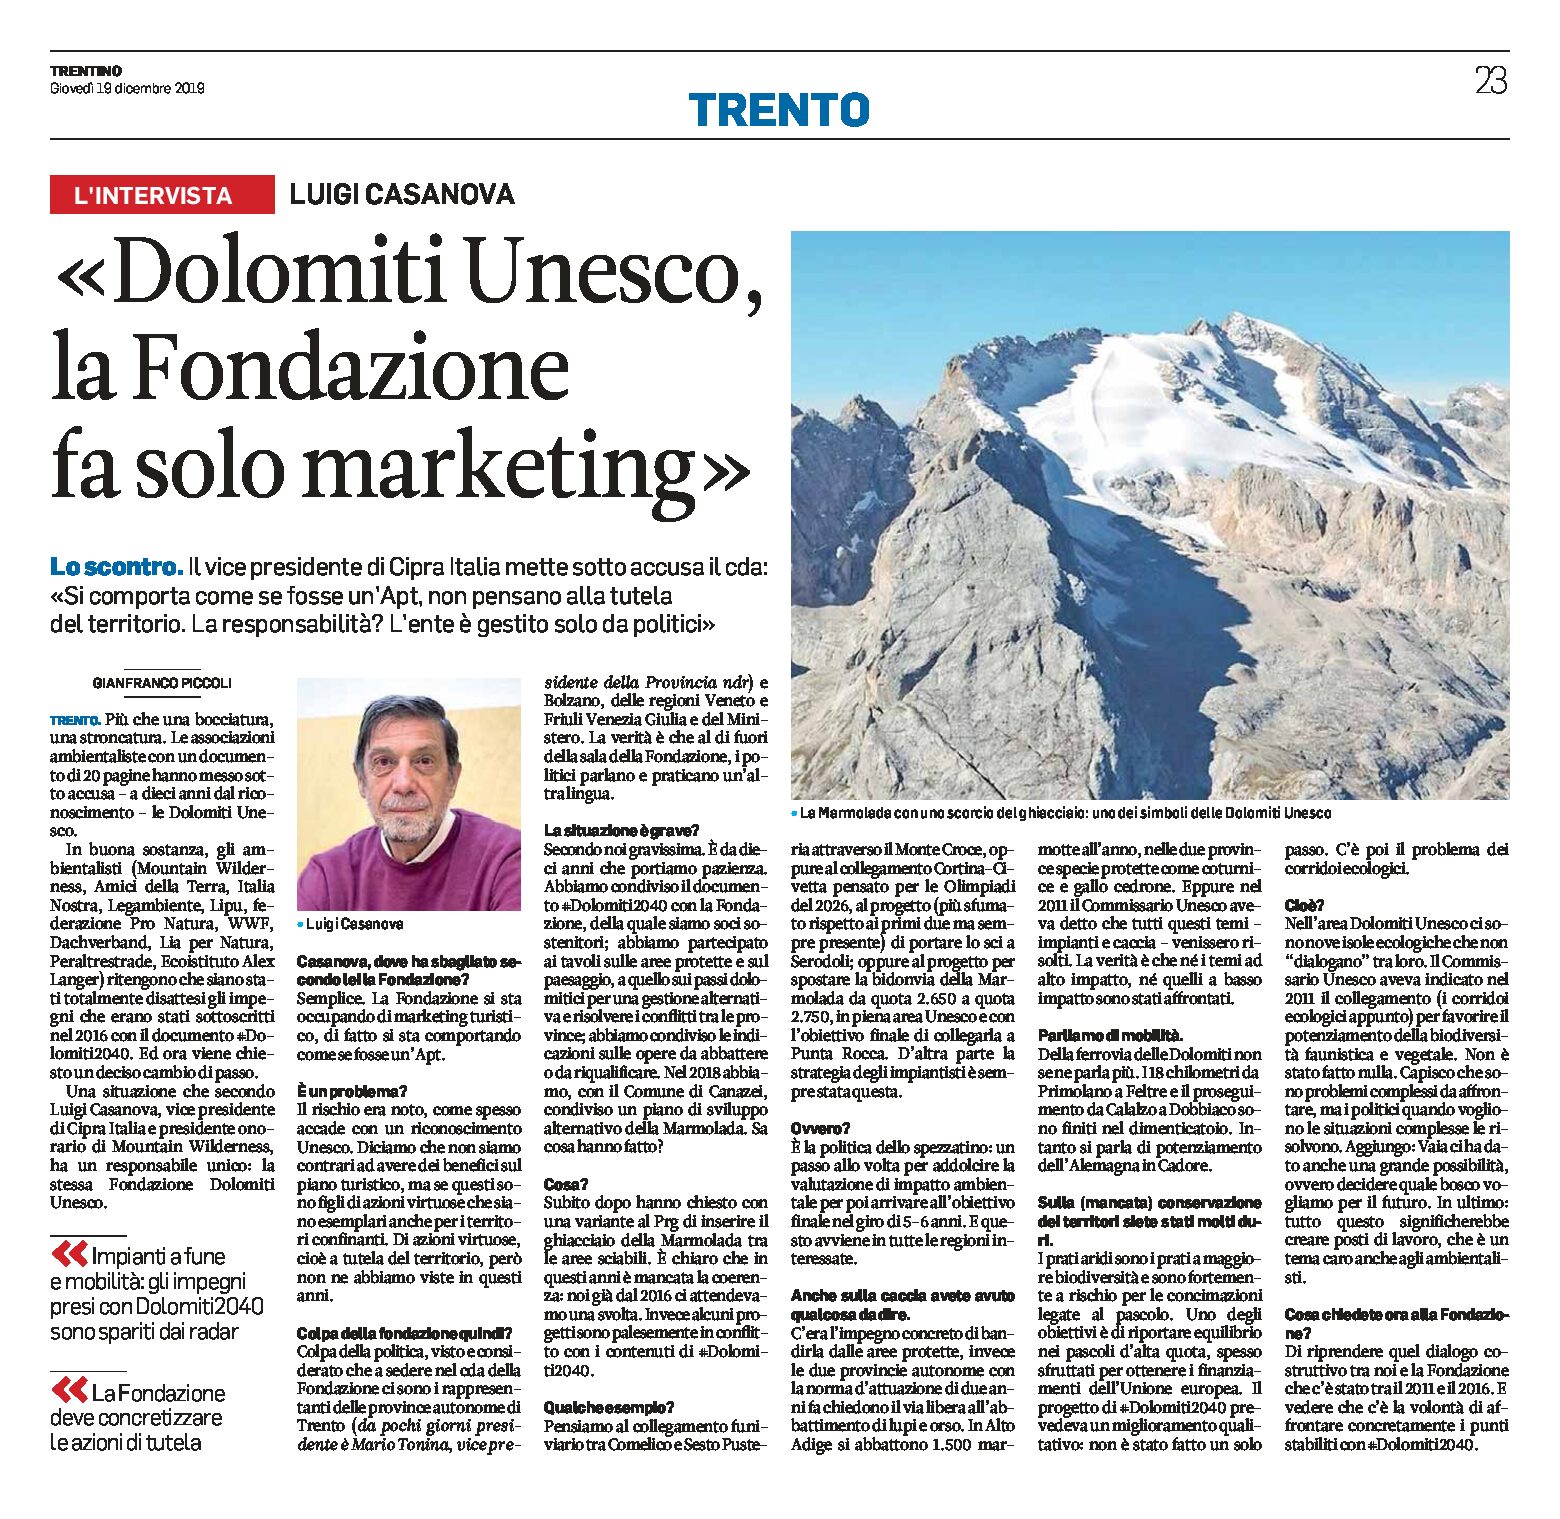 Dolomiti Unesco: intervista a Casanova “la Fondazione fa solo marketing”